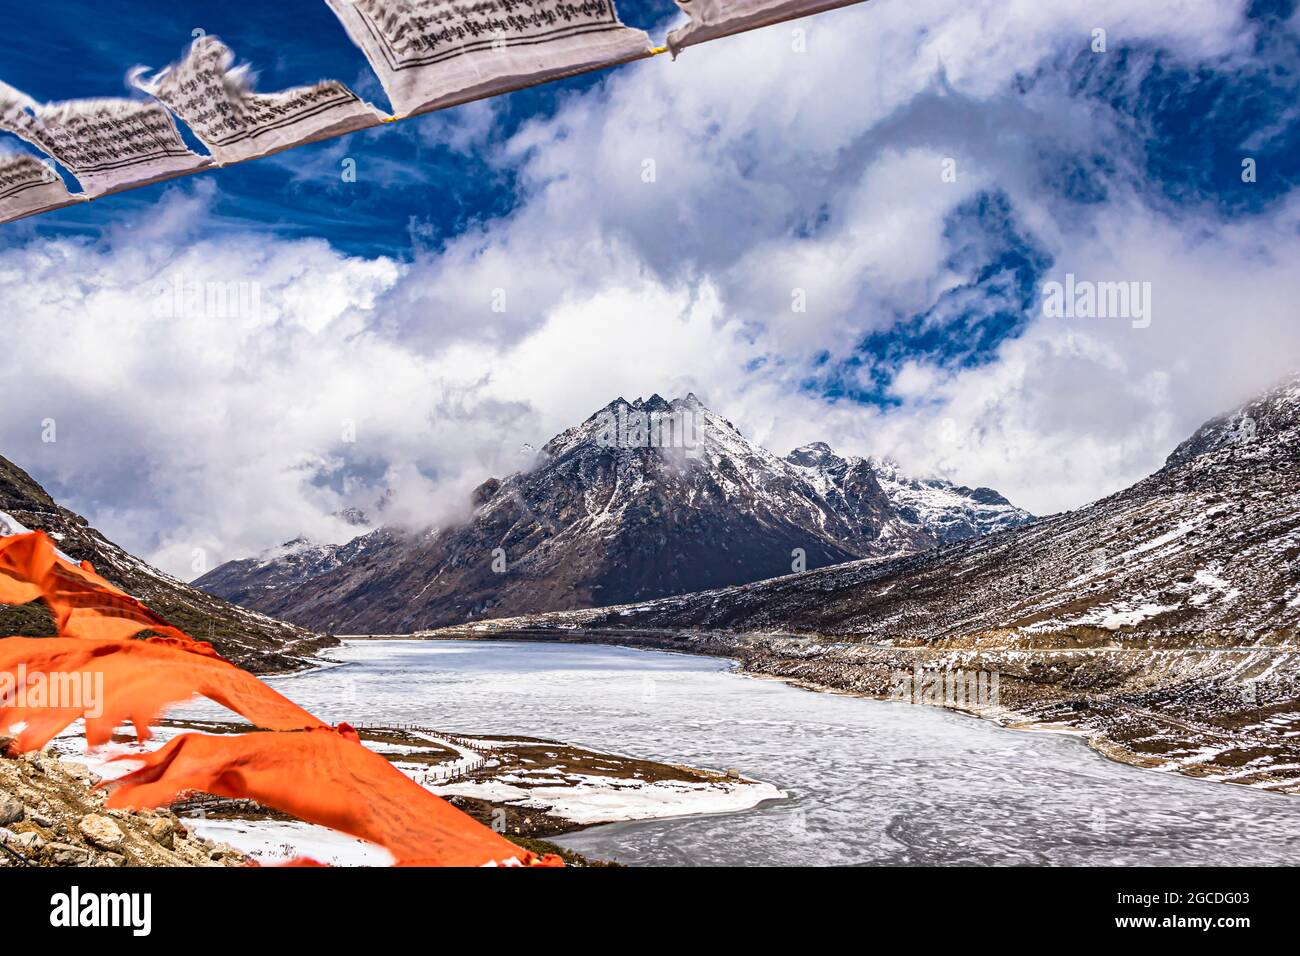 Schneedeckenberg mit dramatischem Himmel durch die verschwommenen buddhistischen Flaggen Rahmen am Tag Bild wird am sela-Pass tawang arunachal pradesh indien aufgenommen. Stockfoto